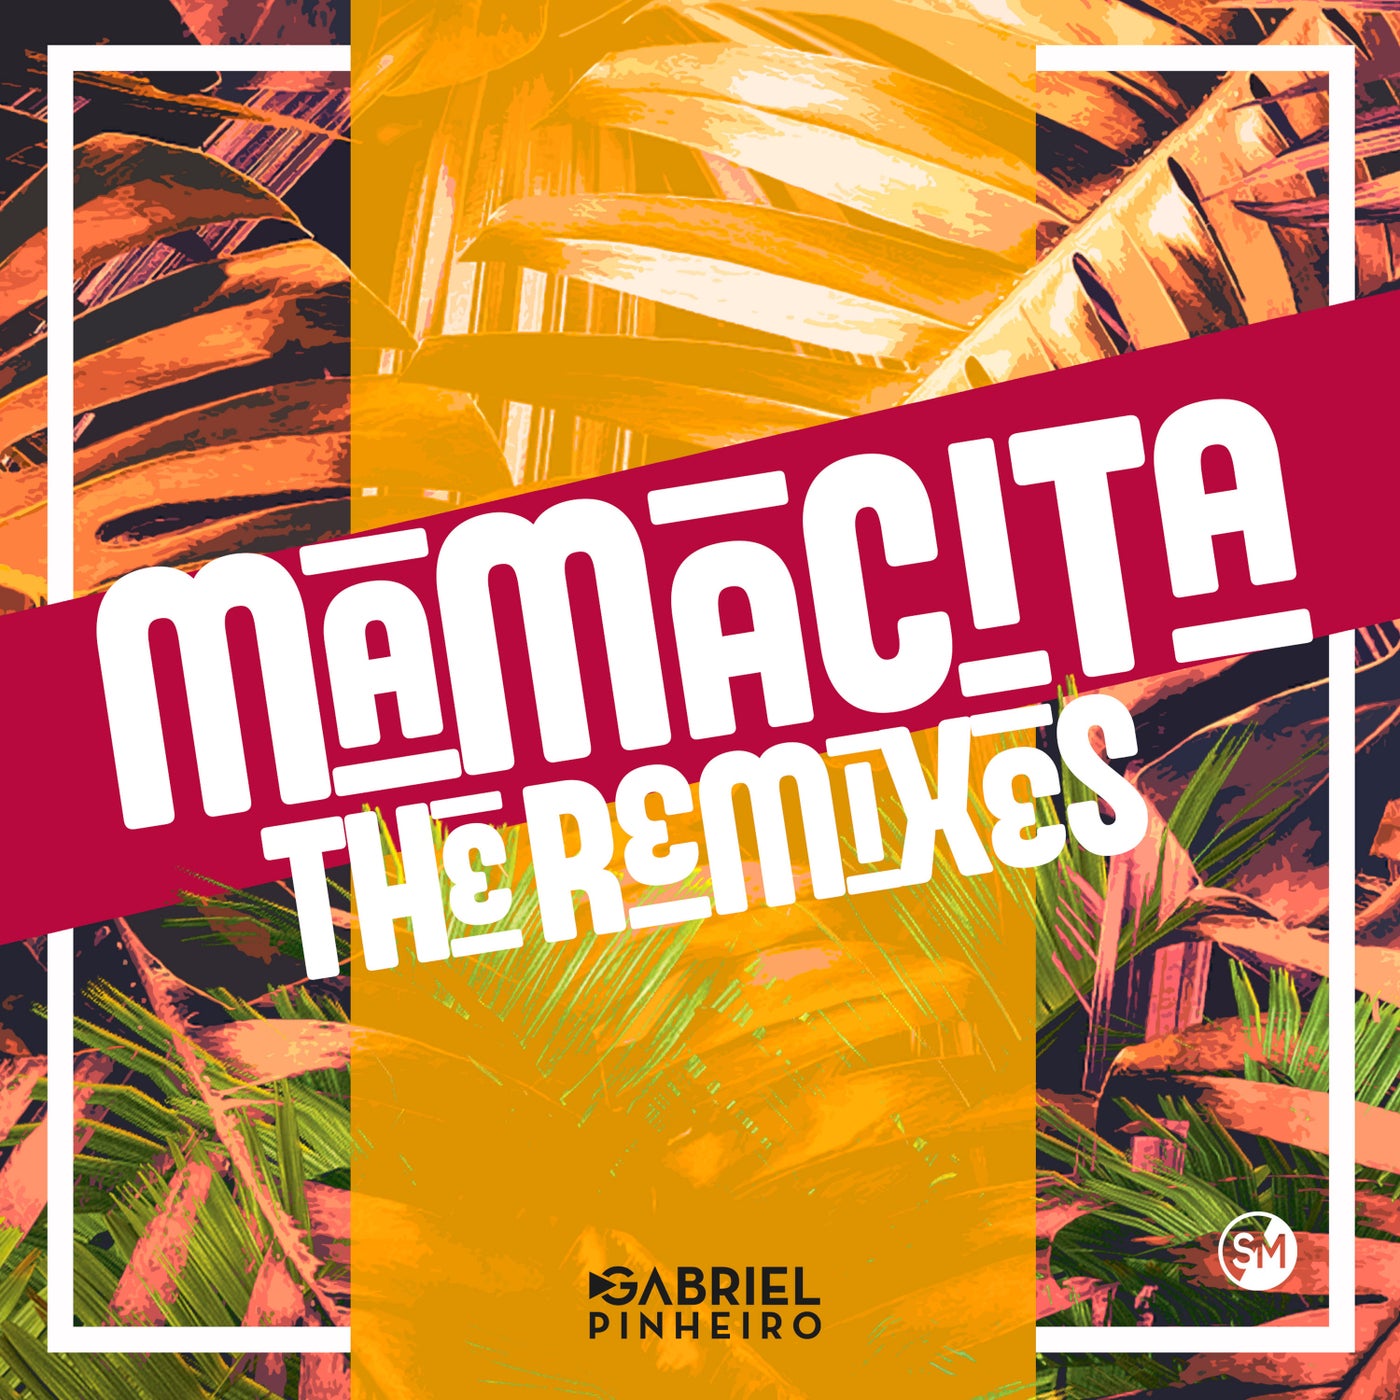 Mamacita (Remixes)